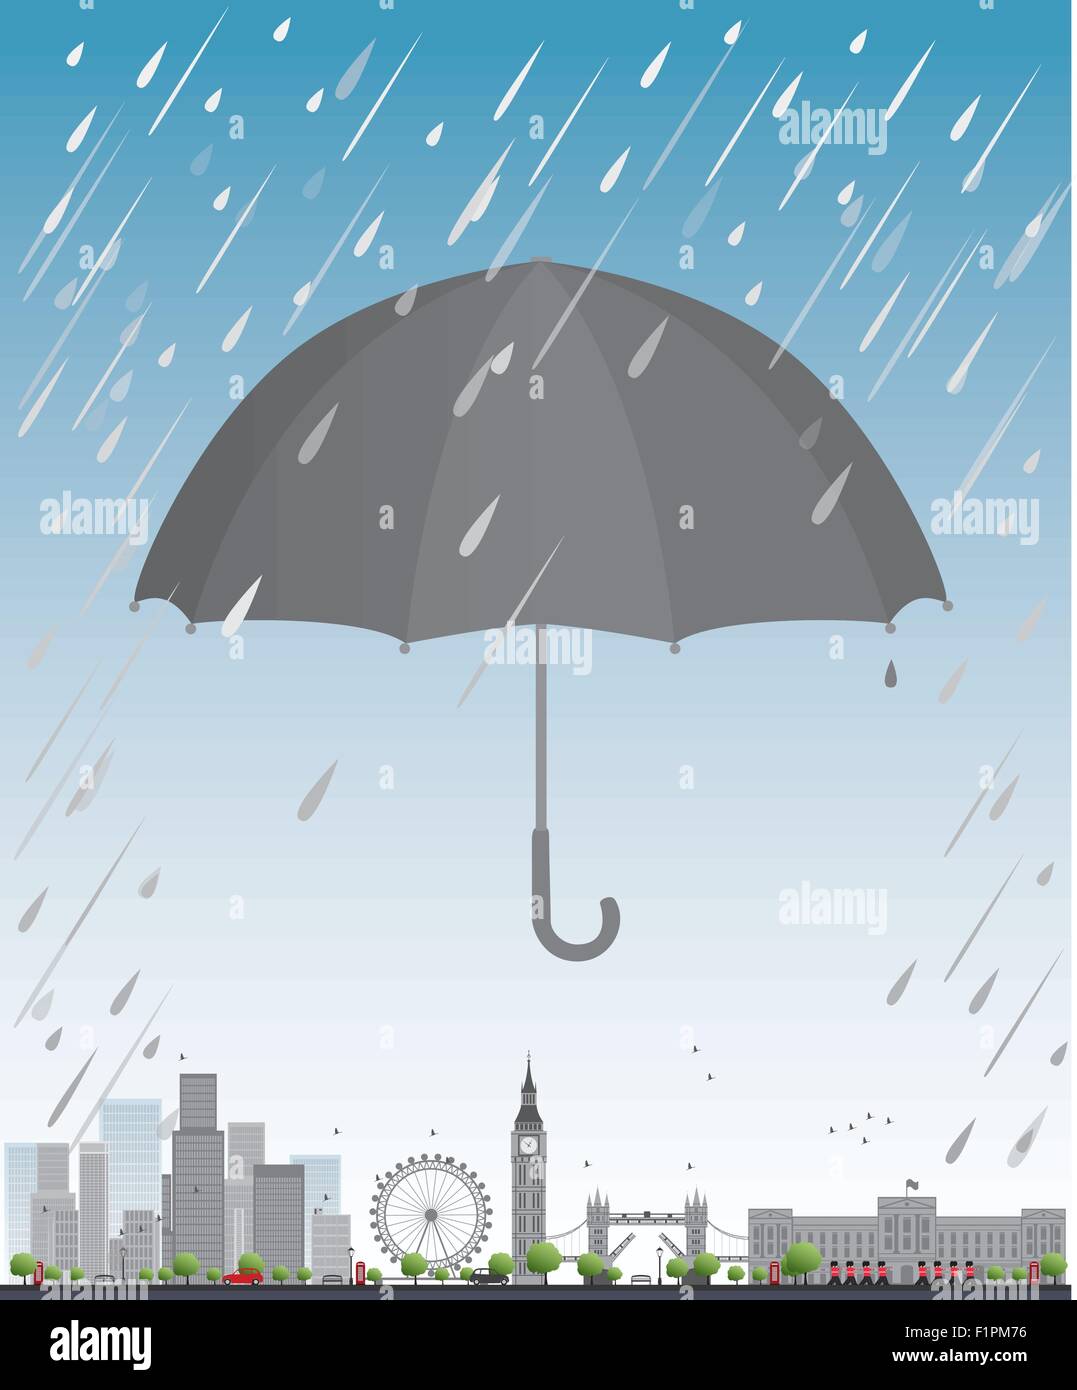 Londres bajo paraguas concepto Viajes ilustración vectorial Ilustración del Vector